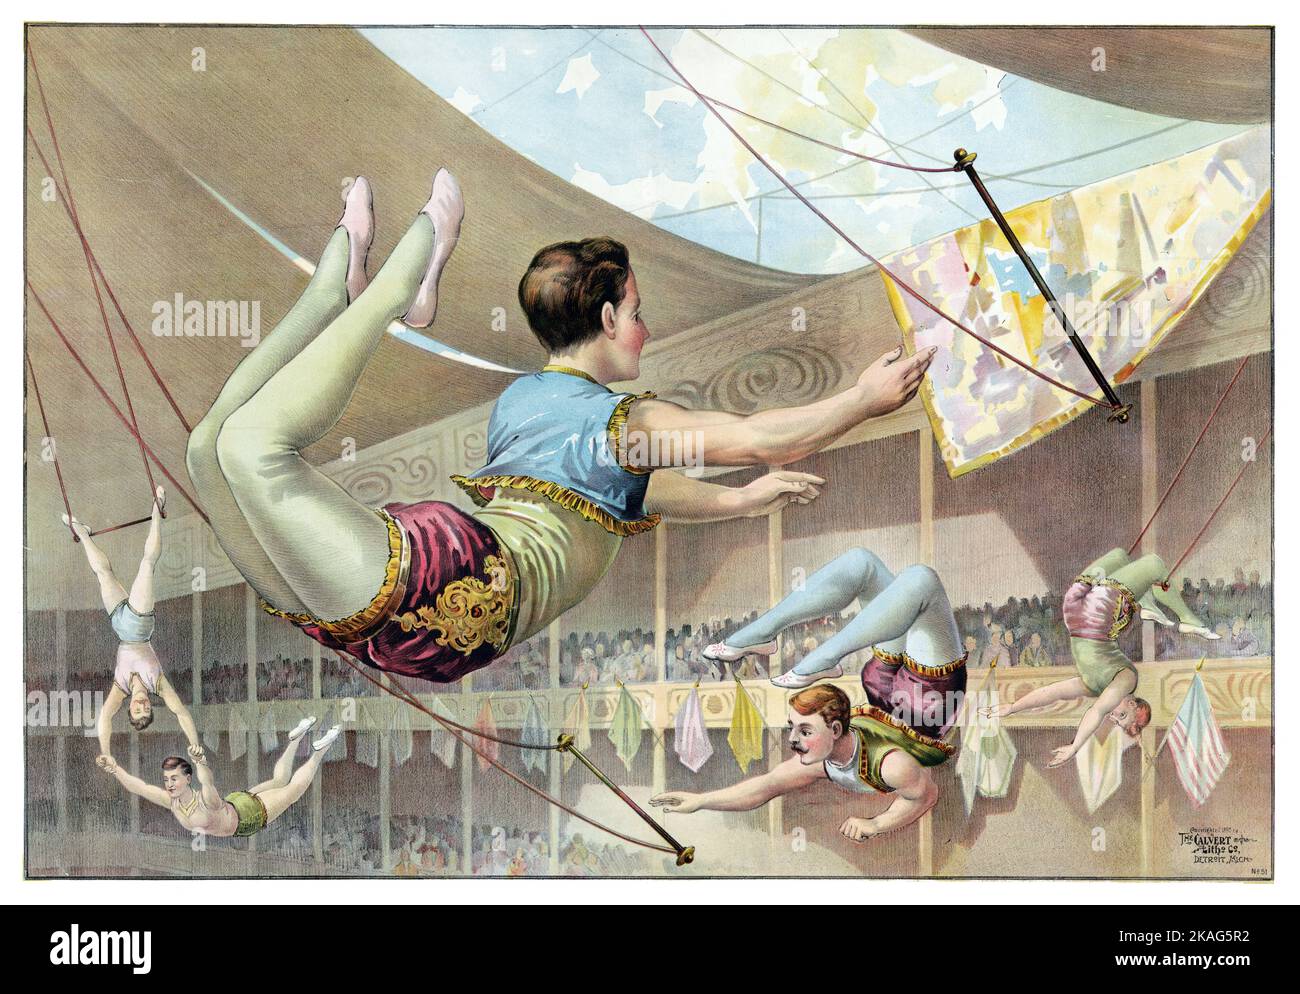 Antikes Zirkusposter - fünf männliche Akrobaten, die in einem Zirkus auftreten - Aerialisten - Zirkuskünstler c 1890 Stockfoto